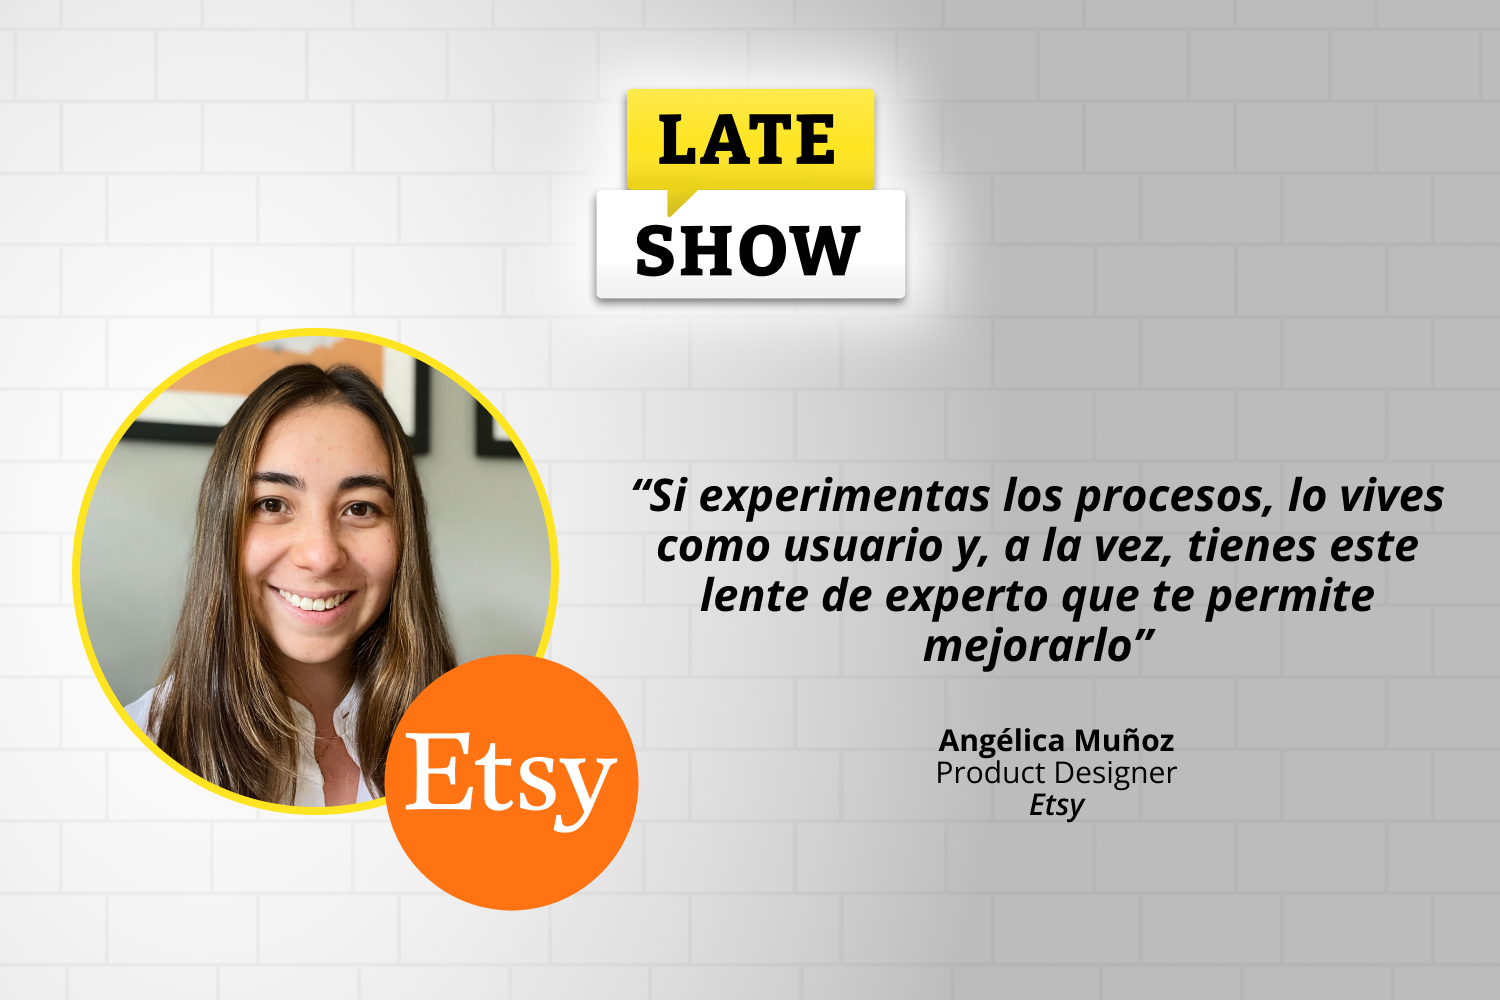 Conversamos con Angélica Muñoz, Product Designer en Etsy, sobre las tecnologías y herramientas para acercar a las empresas a las necesidades reales de sus usuarios/as.